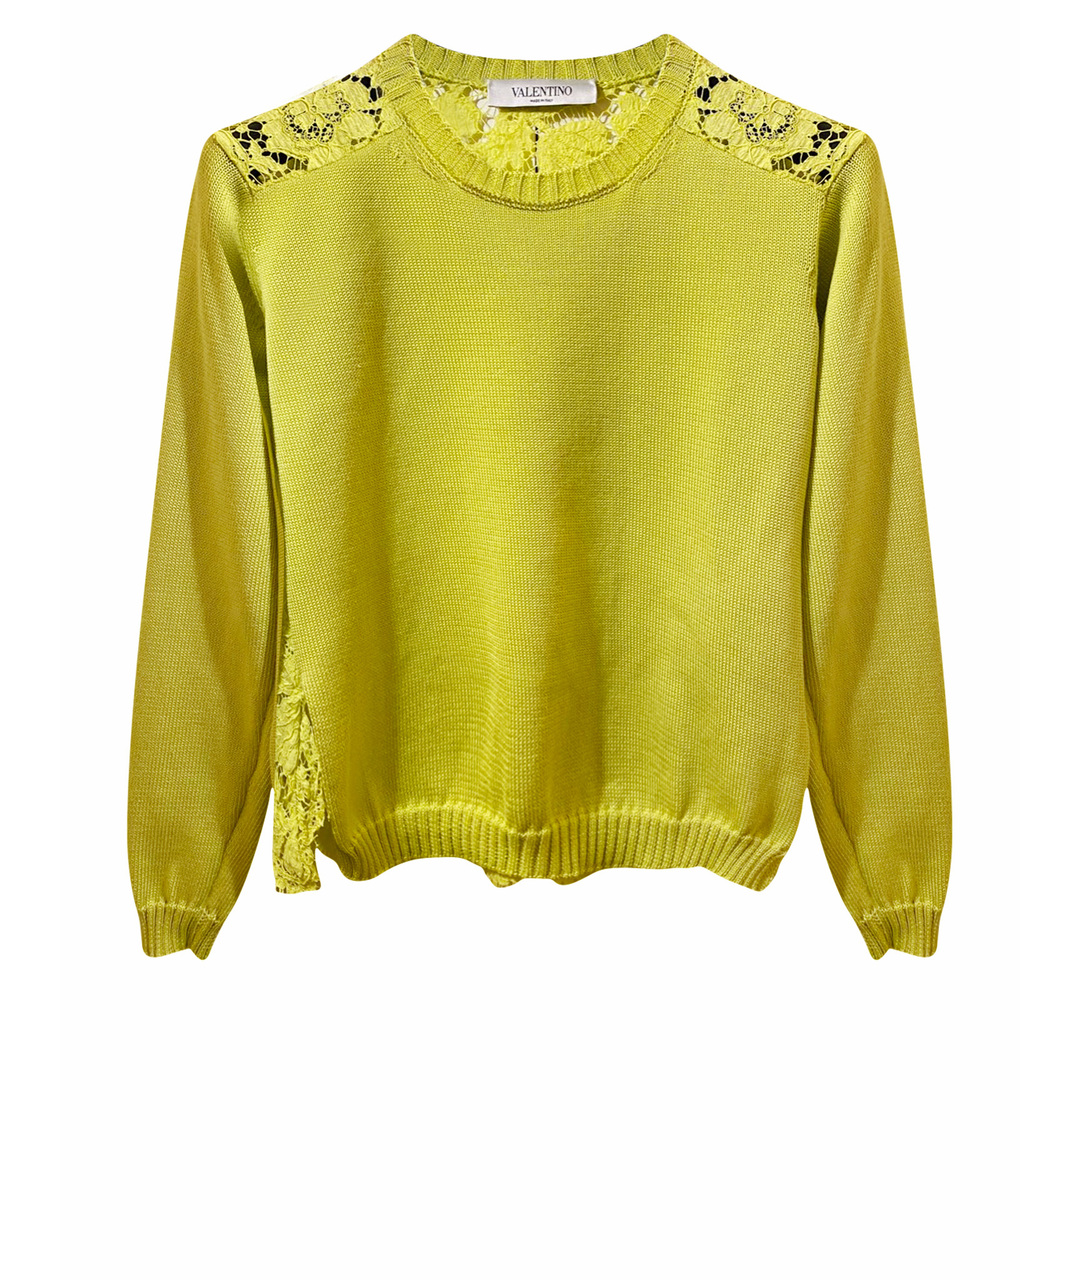 VALENTINO Желтый хлопковый джемпер / свитер, фото 1